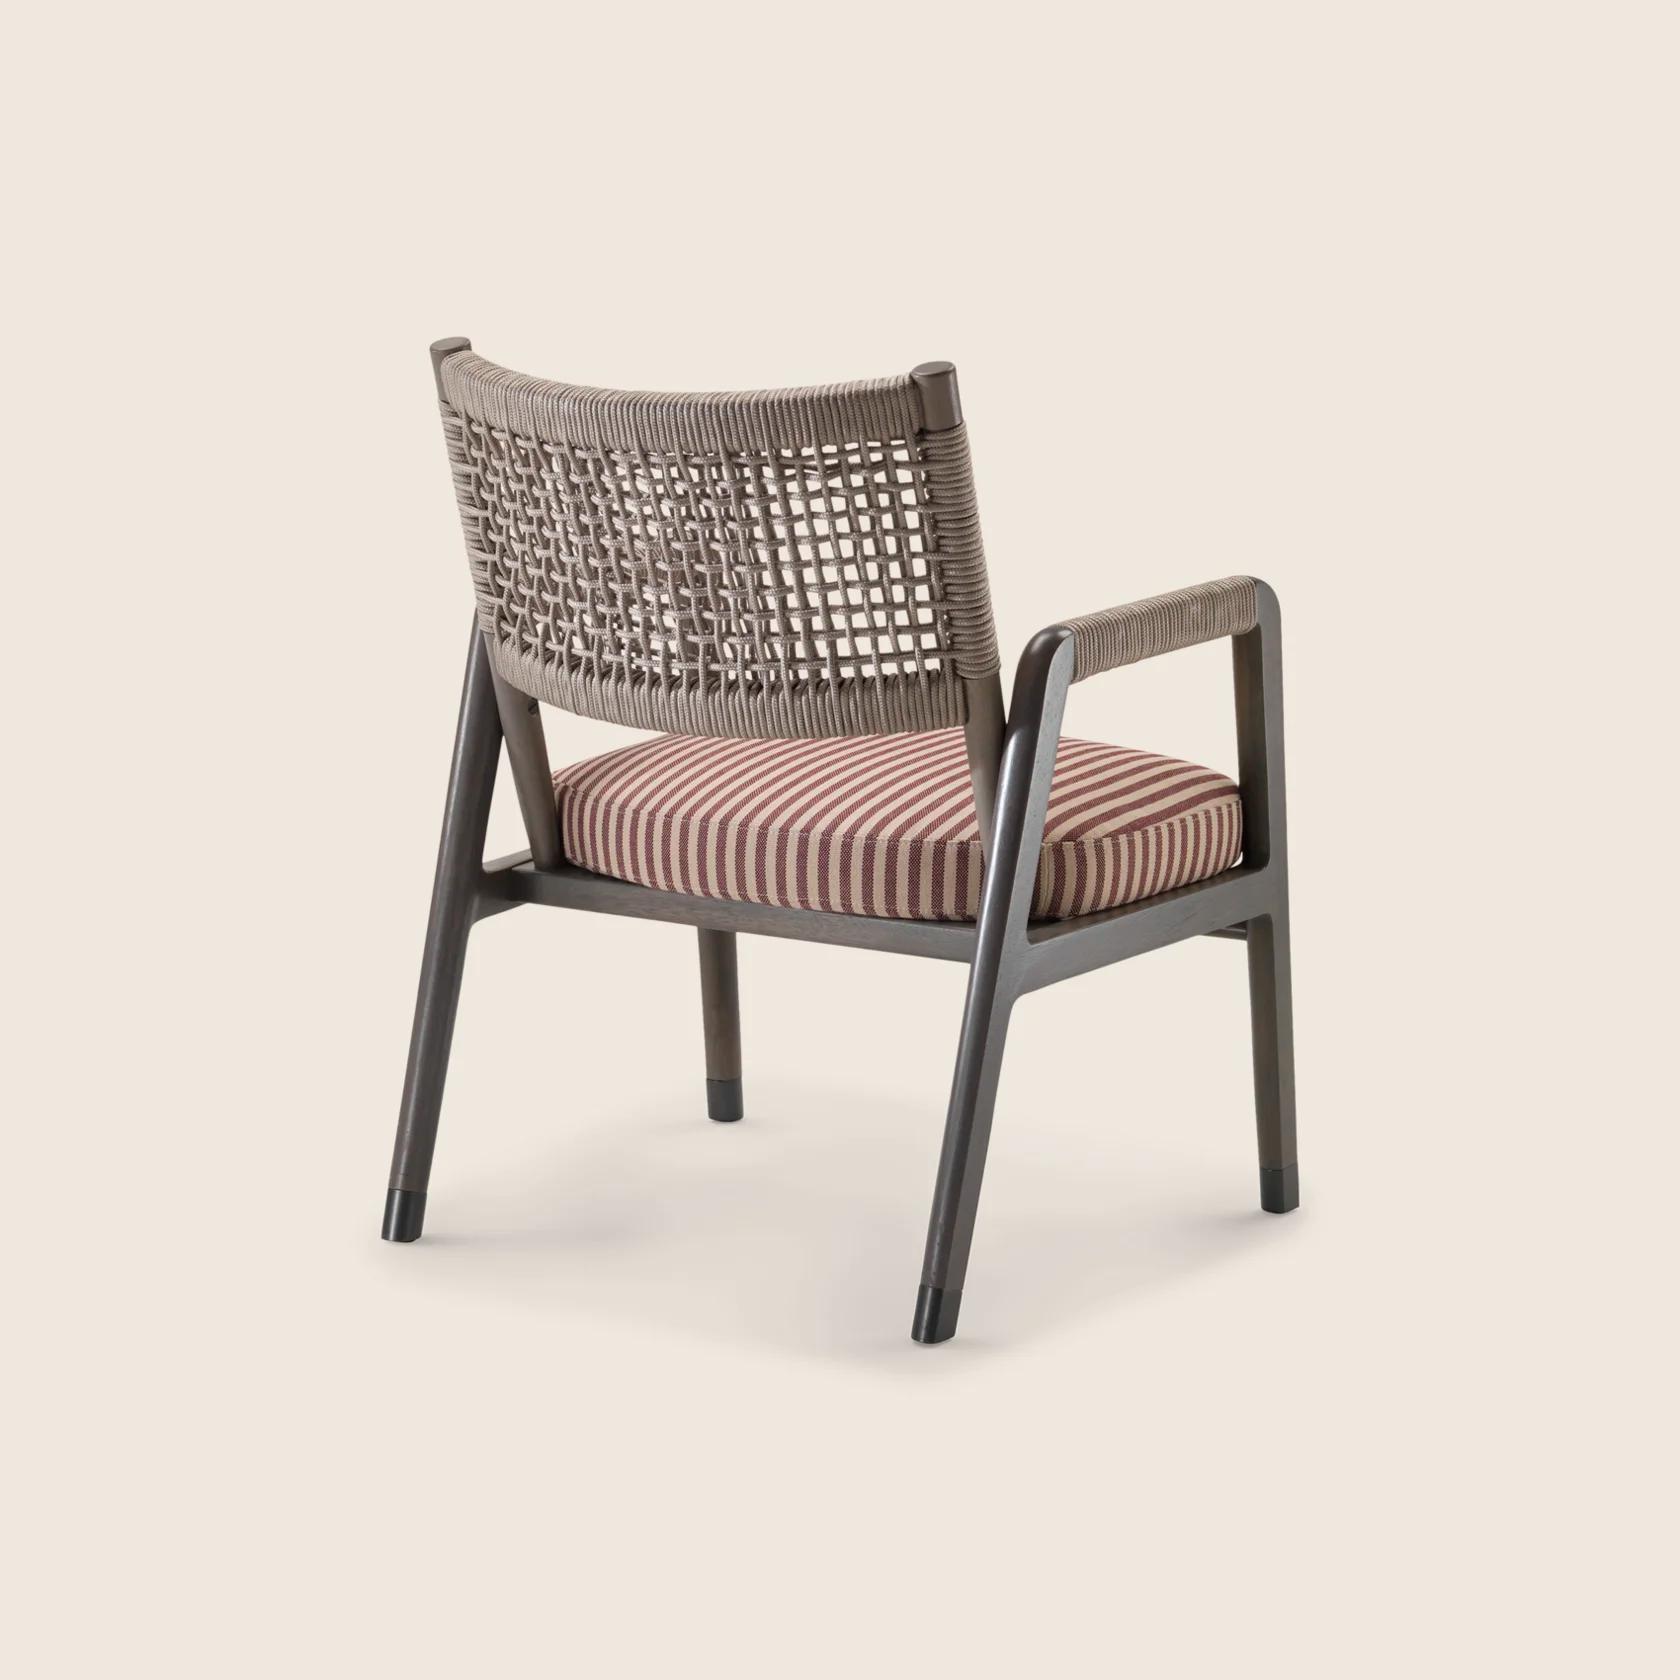 ORTIGIA OUTDOOR 扶手椅| Design Made in Italy - Flexform